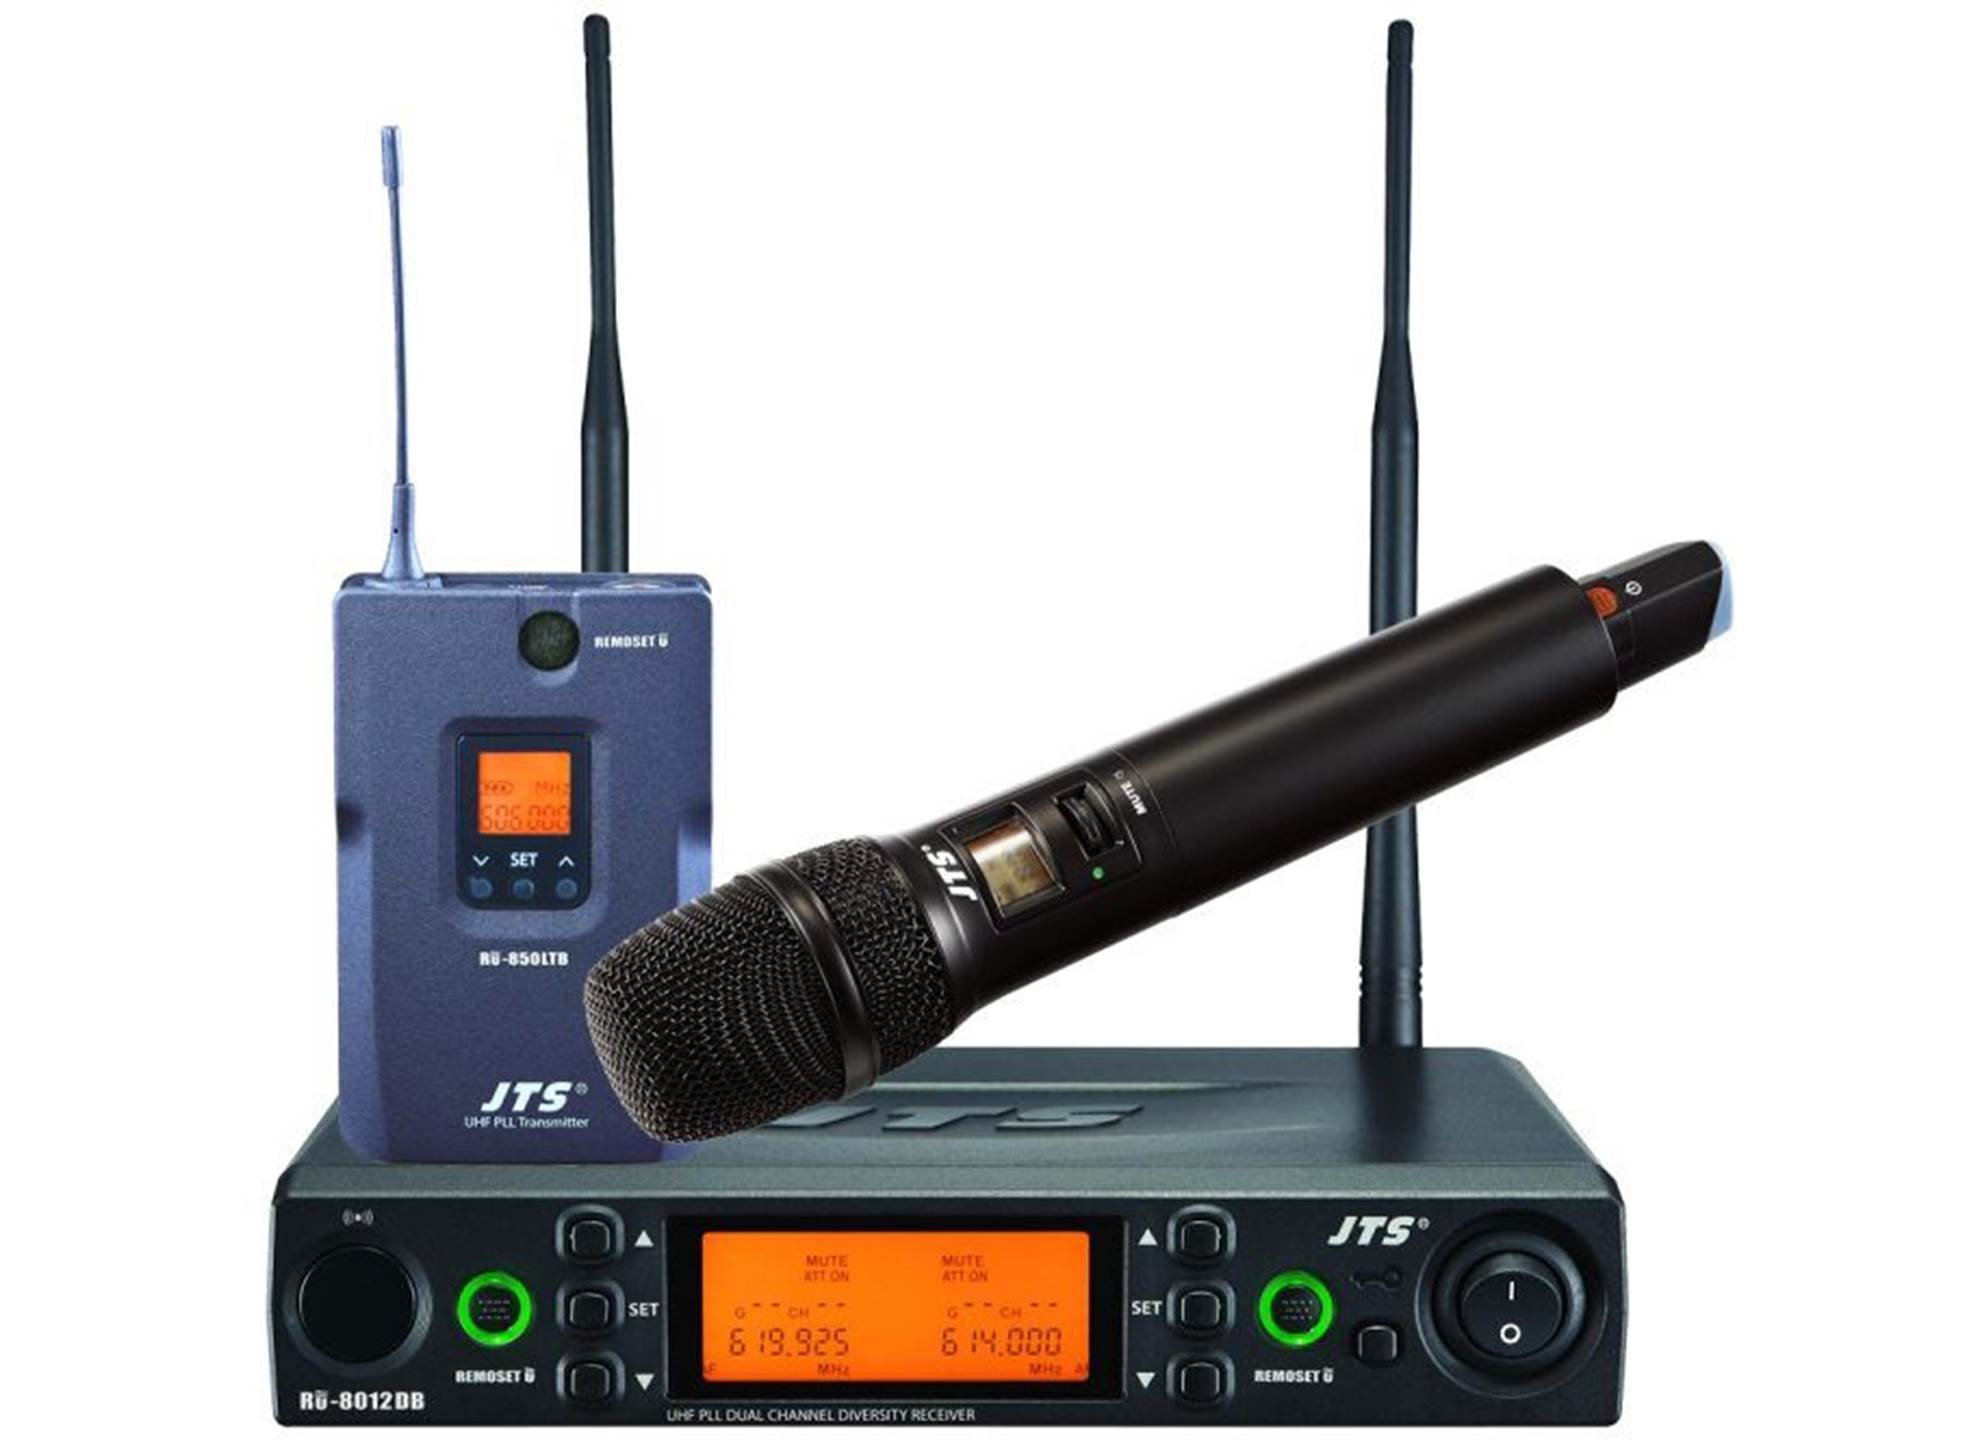 Вокальная радиосистема с ручным передатчиком. Радиосистема UHF двухканальная. JTS ru-850lth. Двухканальная радиосистема с двумя петличными микрофонами Shure. Радиосистема UHF K-23.